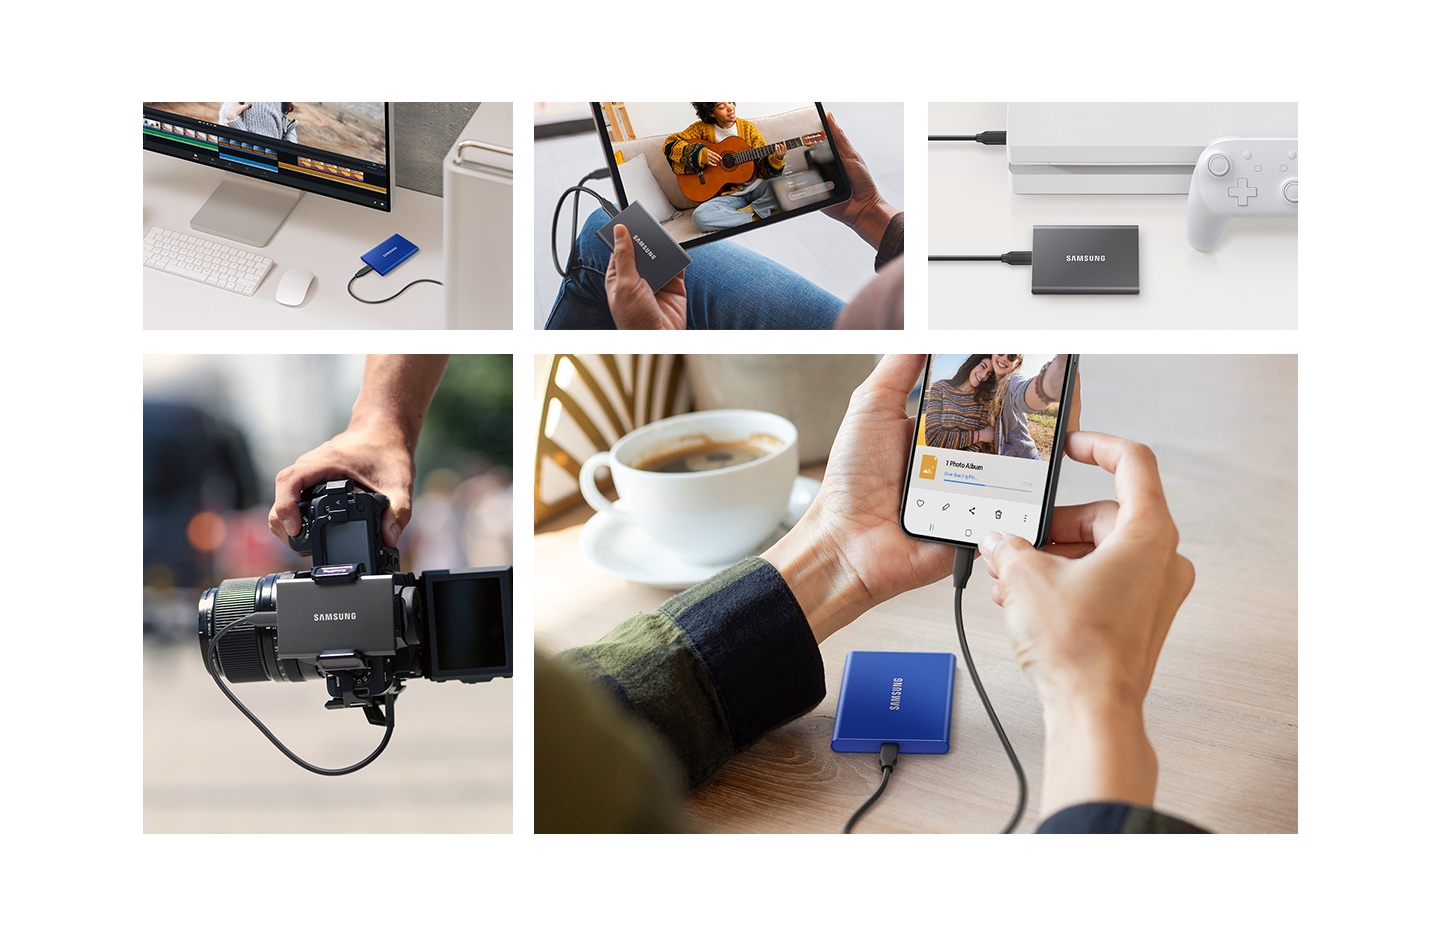 コンピューターストレージ、カメラからの直接録画、ゲームライブラリの拡張など、Samsung ポータブル SSD のさまざまな用途を紹介するコラージュ。